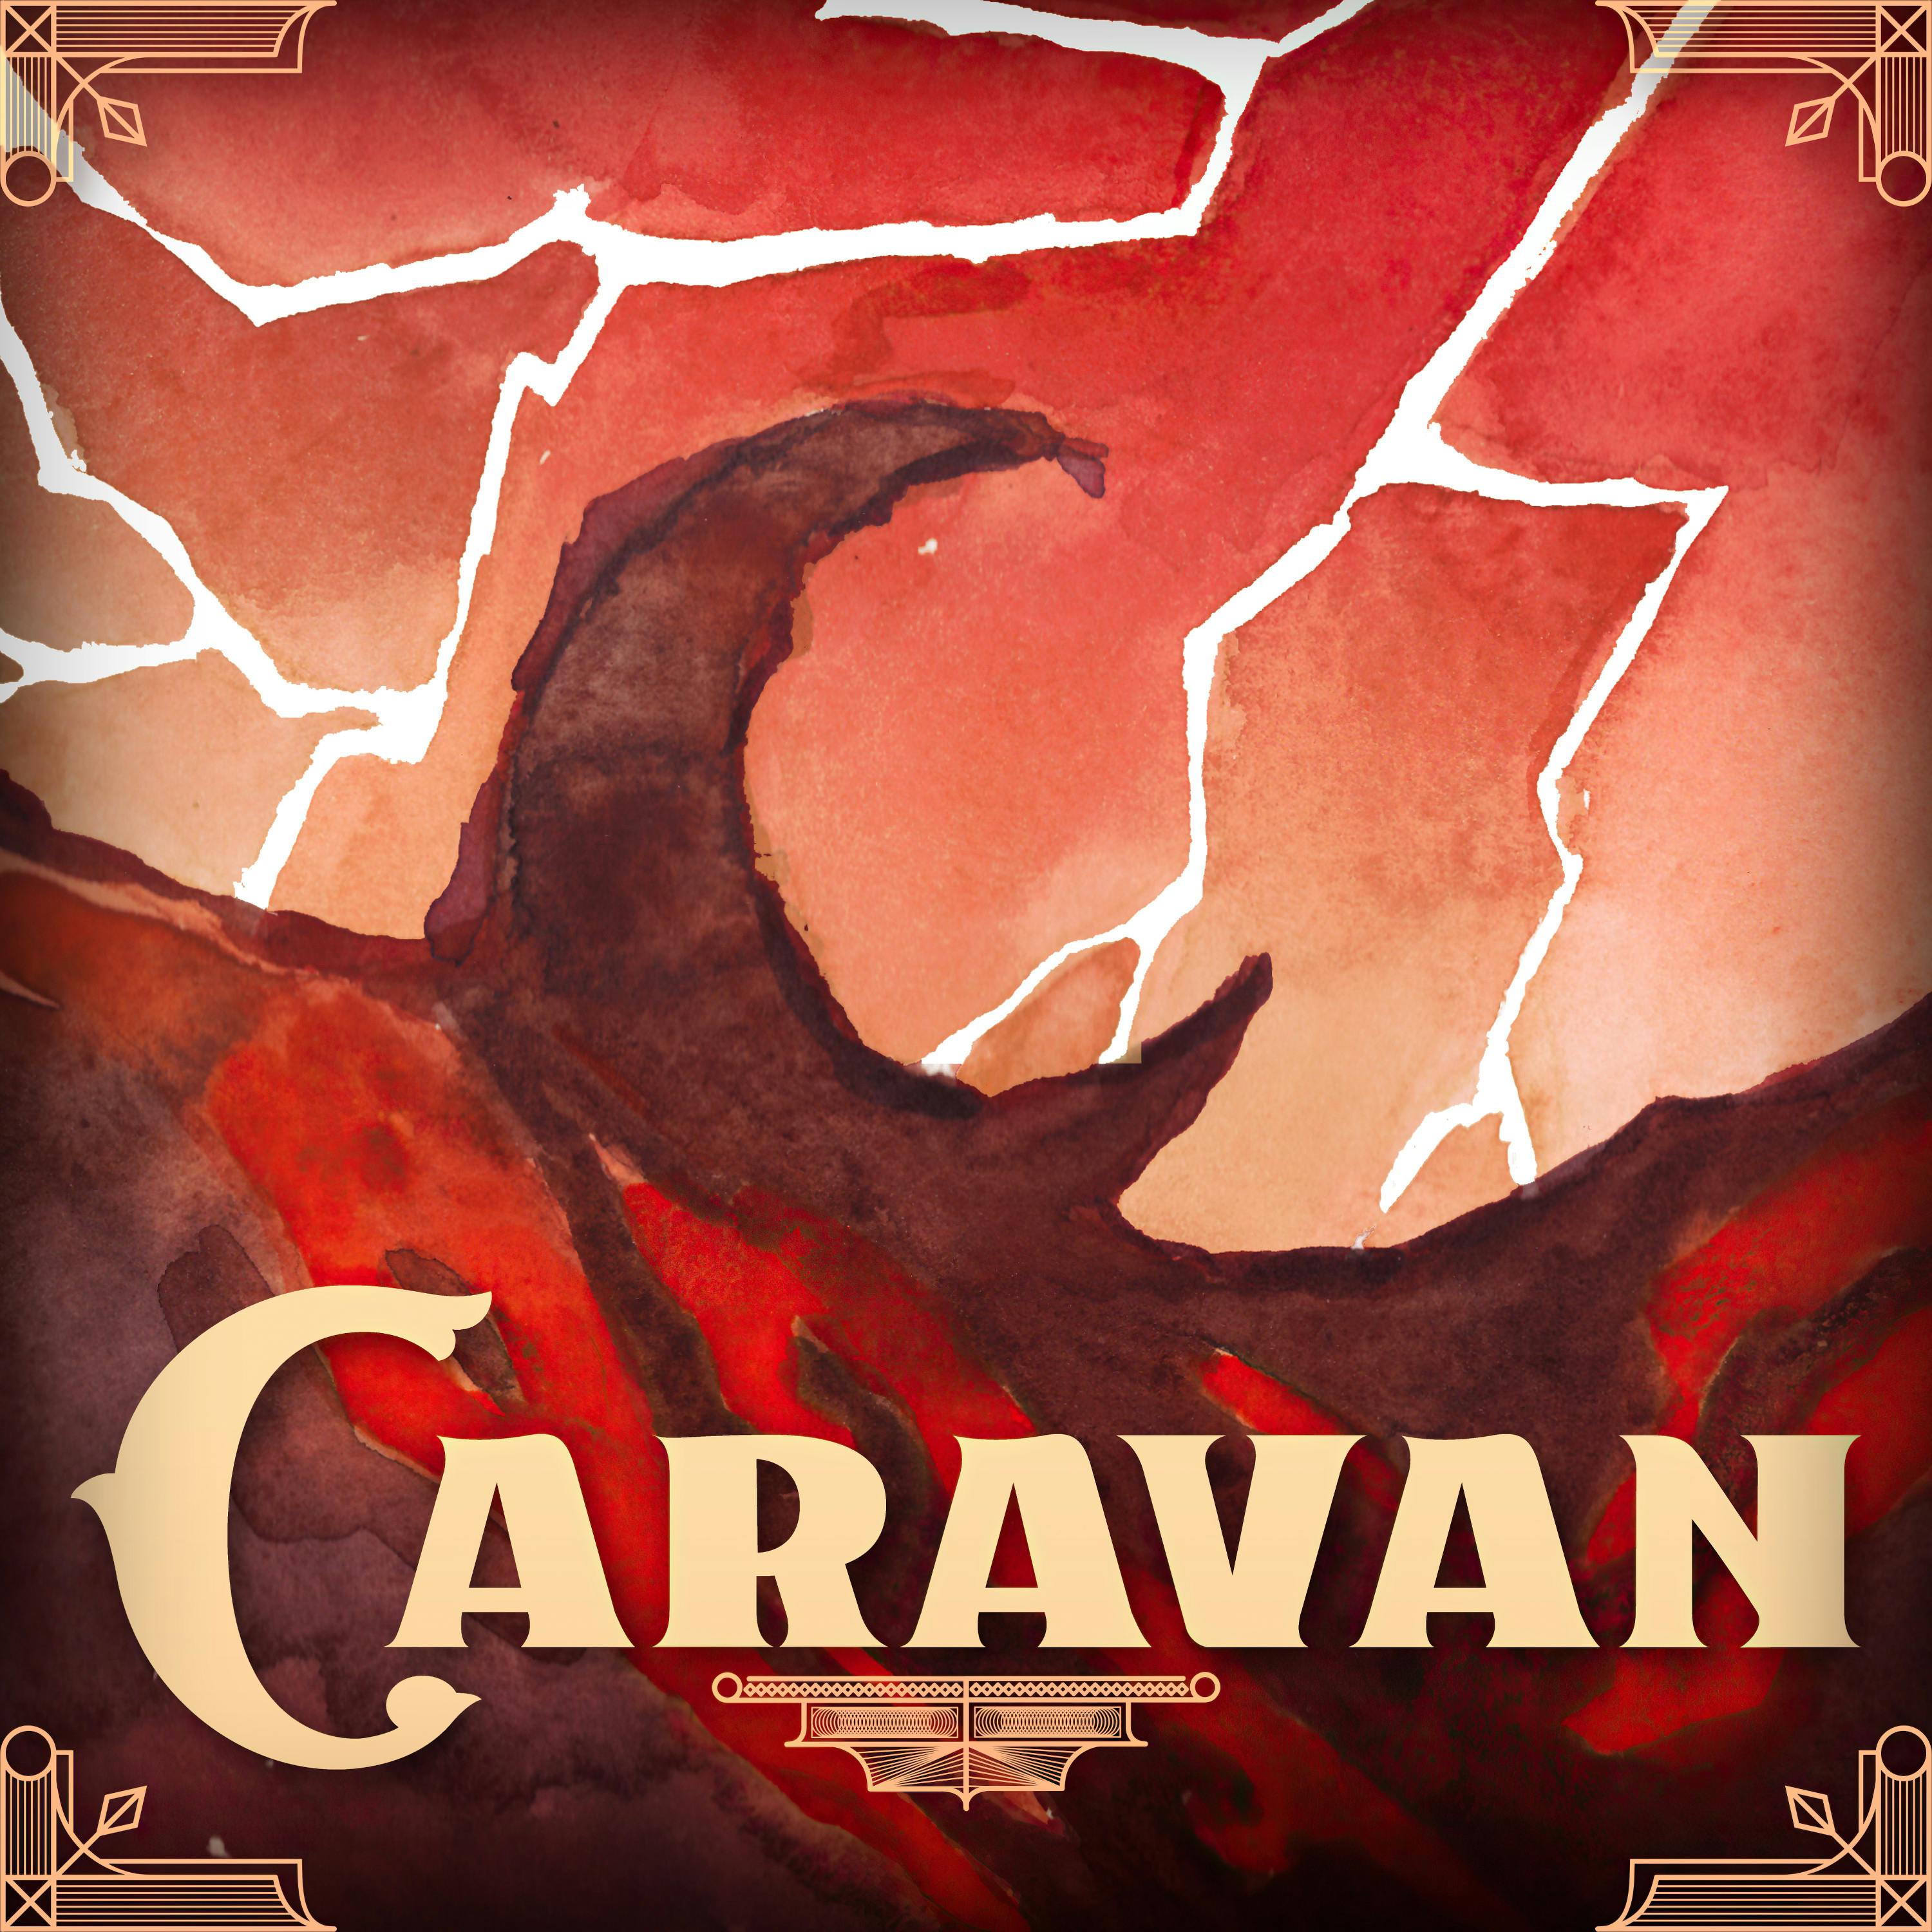 CARAVAN podcast show image